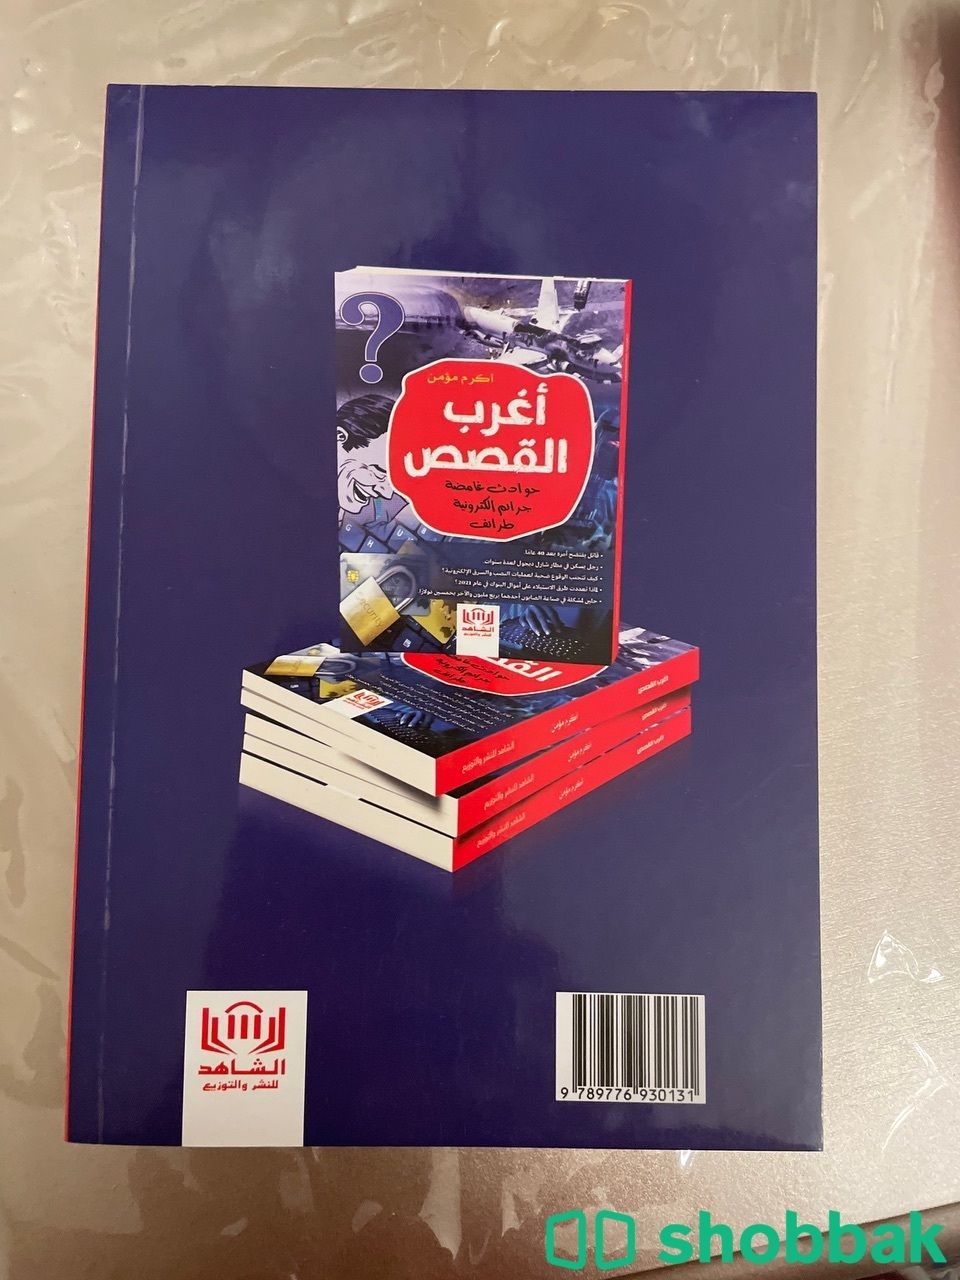 مجموعة كتب Shobbak Saudi Arabia